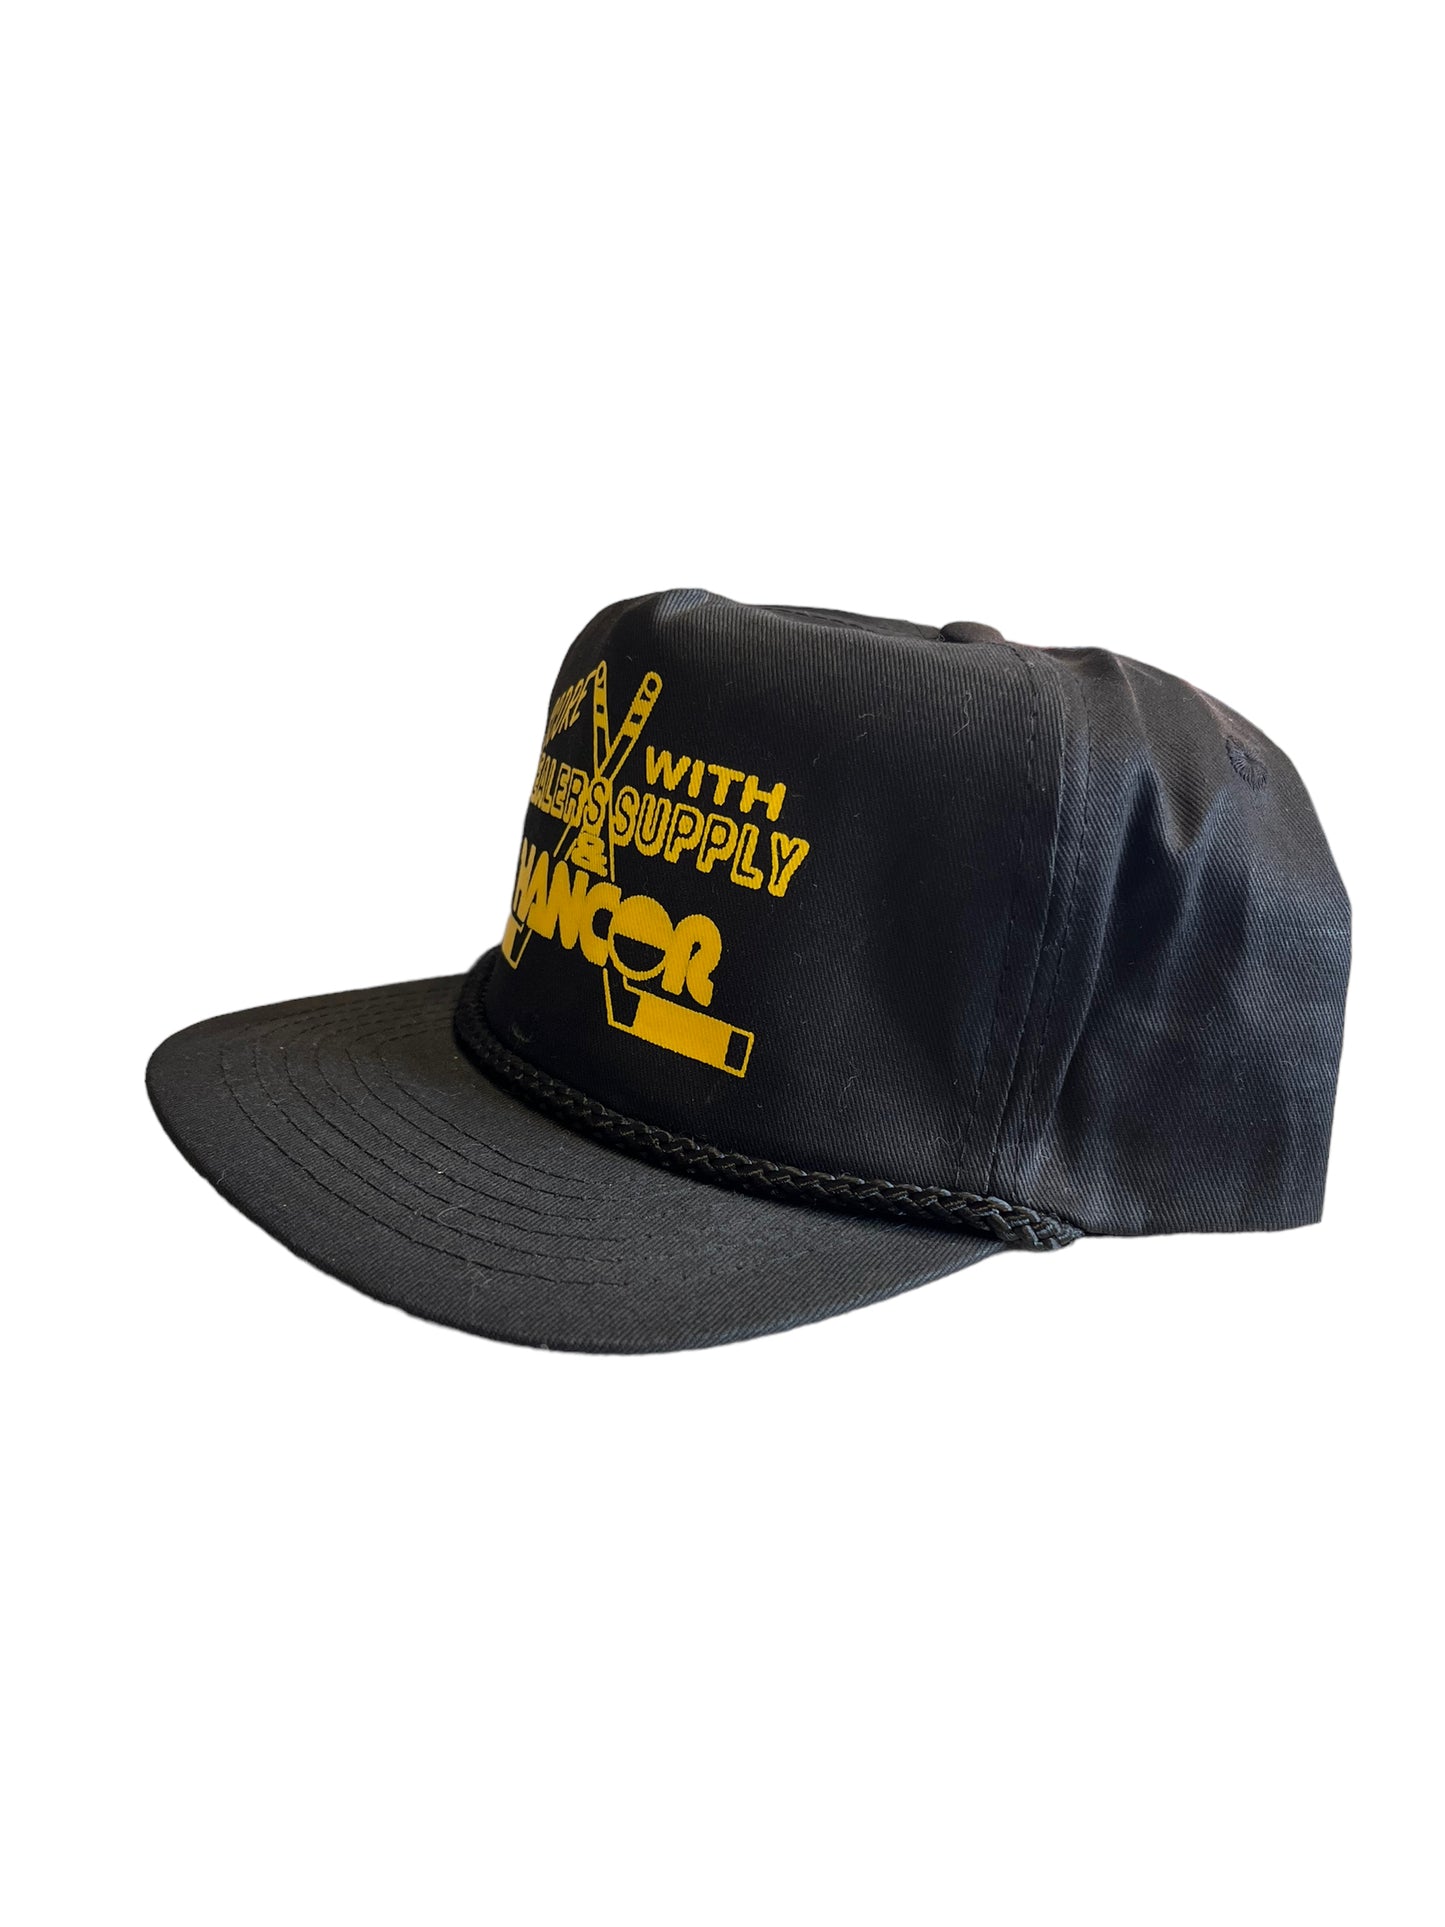 Vintage Hancor Dealer Supply Snapback Hat Brand New